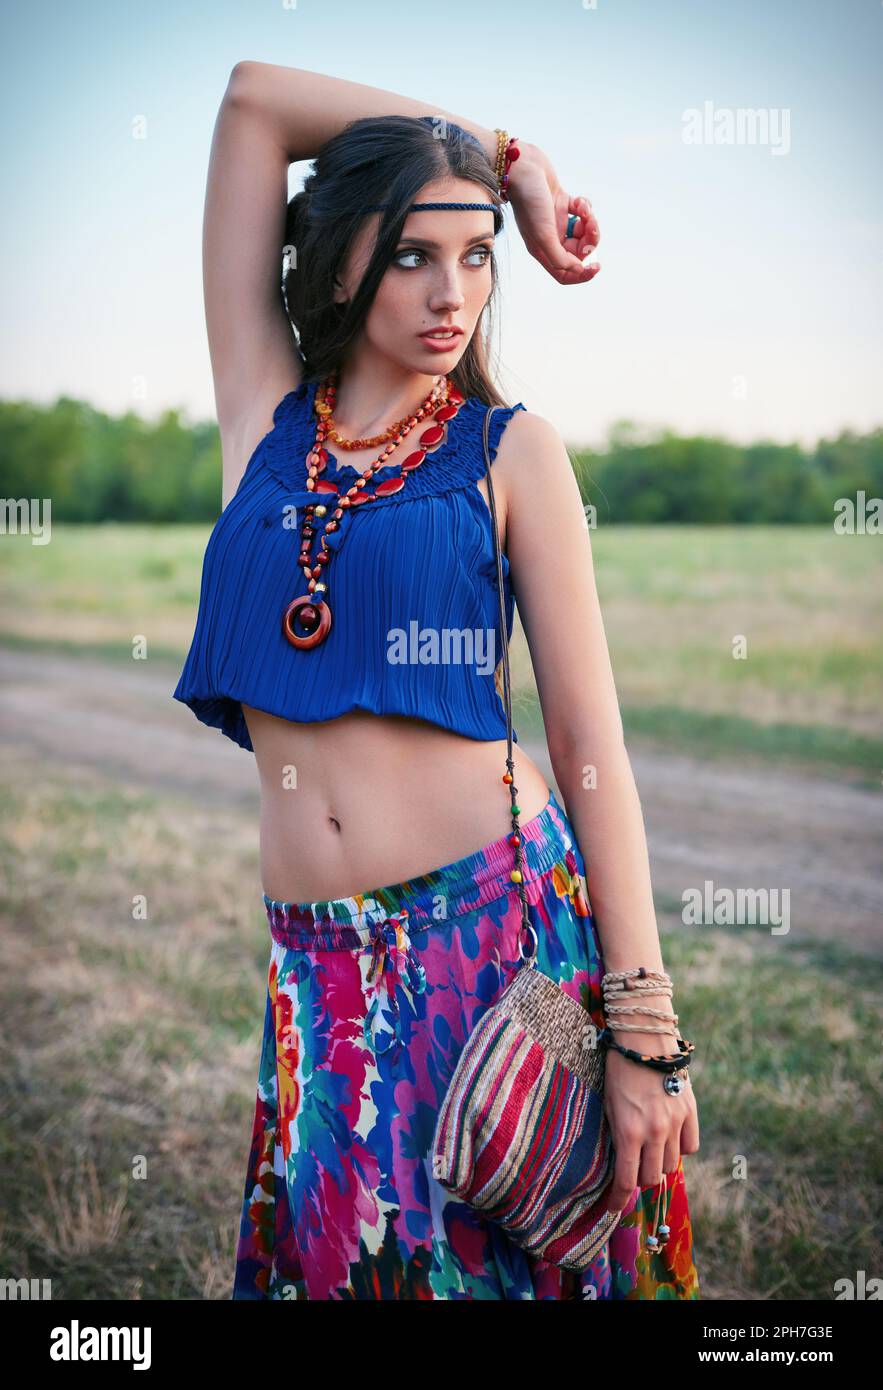 Portrait extérieur de la jeune fille boho (hippie) attrayante dans le champ Banque D'Images